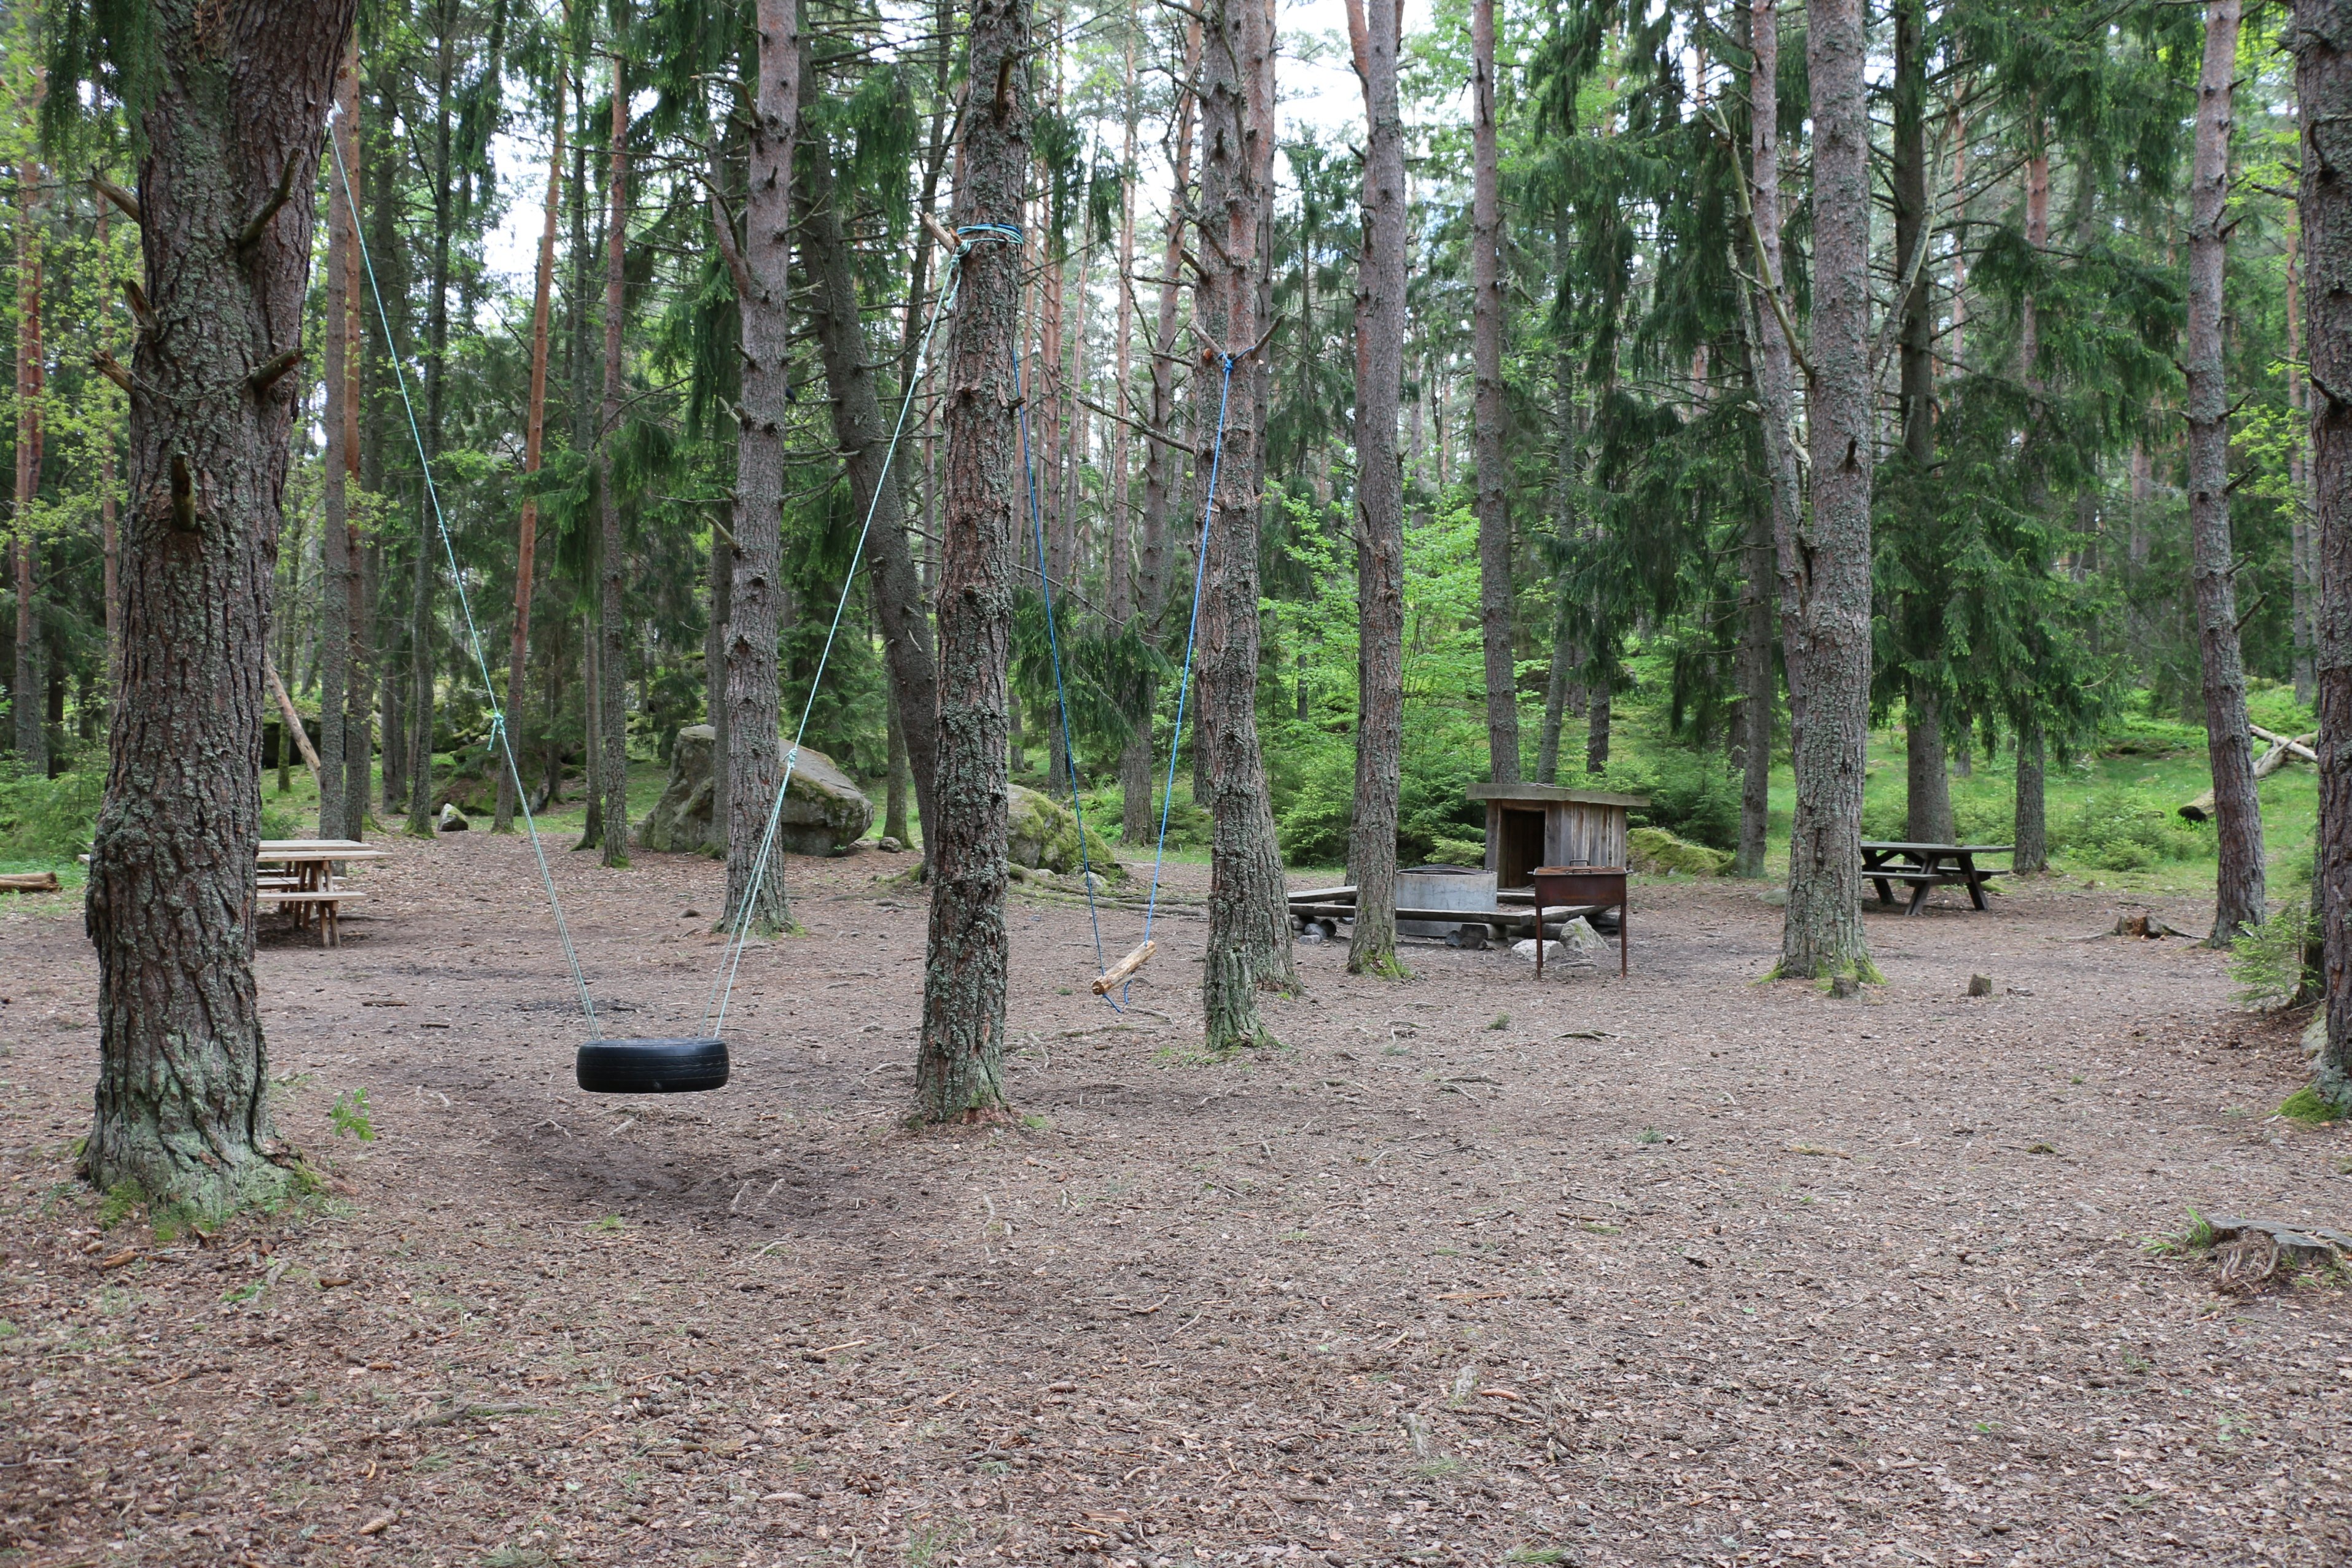 Rastplats i skogen med bord och bänkar, eldstad, vedförråd och två gungor. En gunga är gjord av ett däck, den andra av en trädgren.